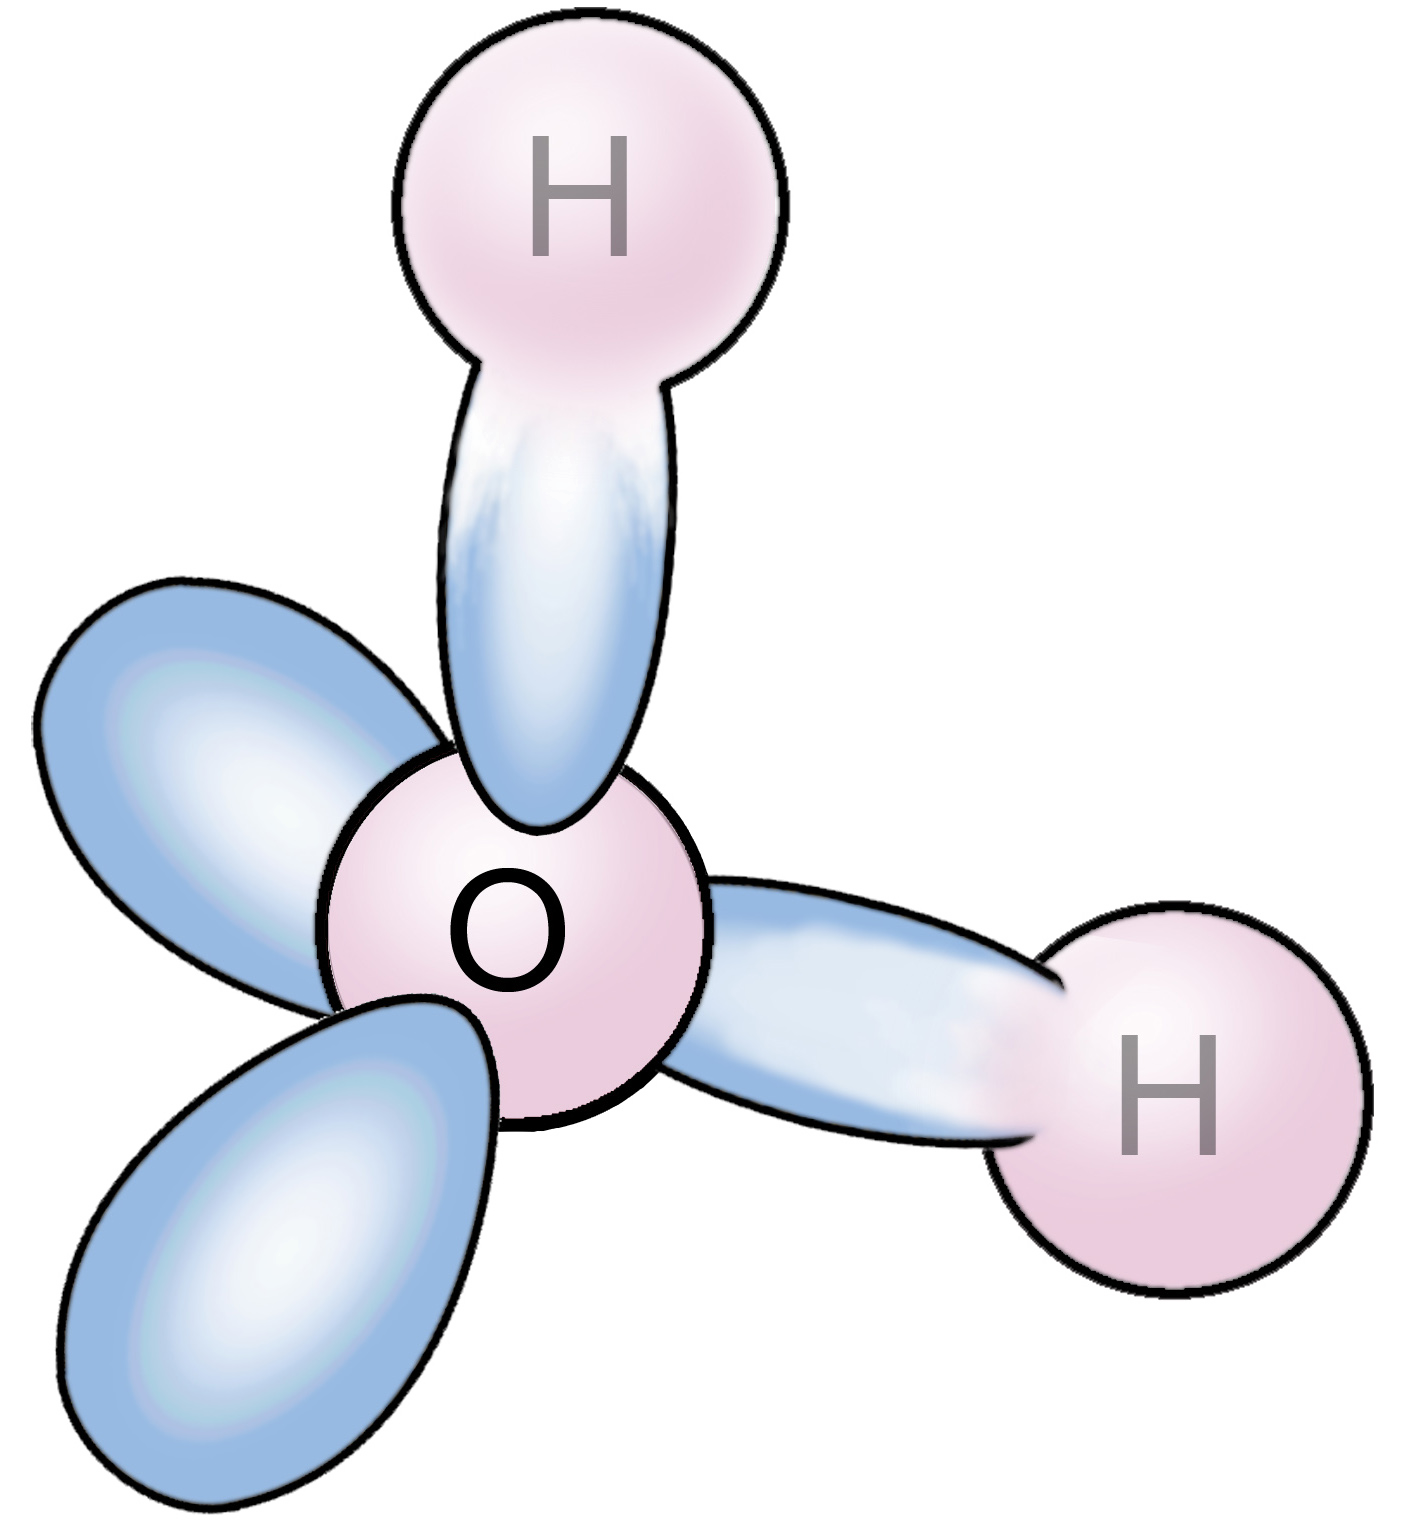 Механизм образования молекулы h2o. Нарисовать молекулу h2s. Нарисовать молекулу h3po4. Нарисовать молекулу h2co3.